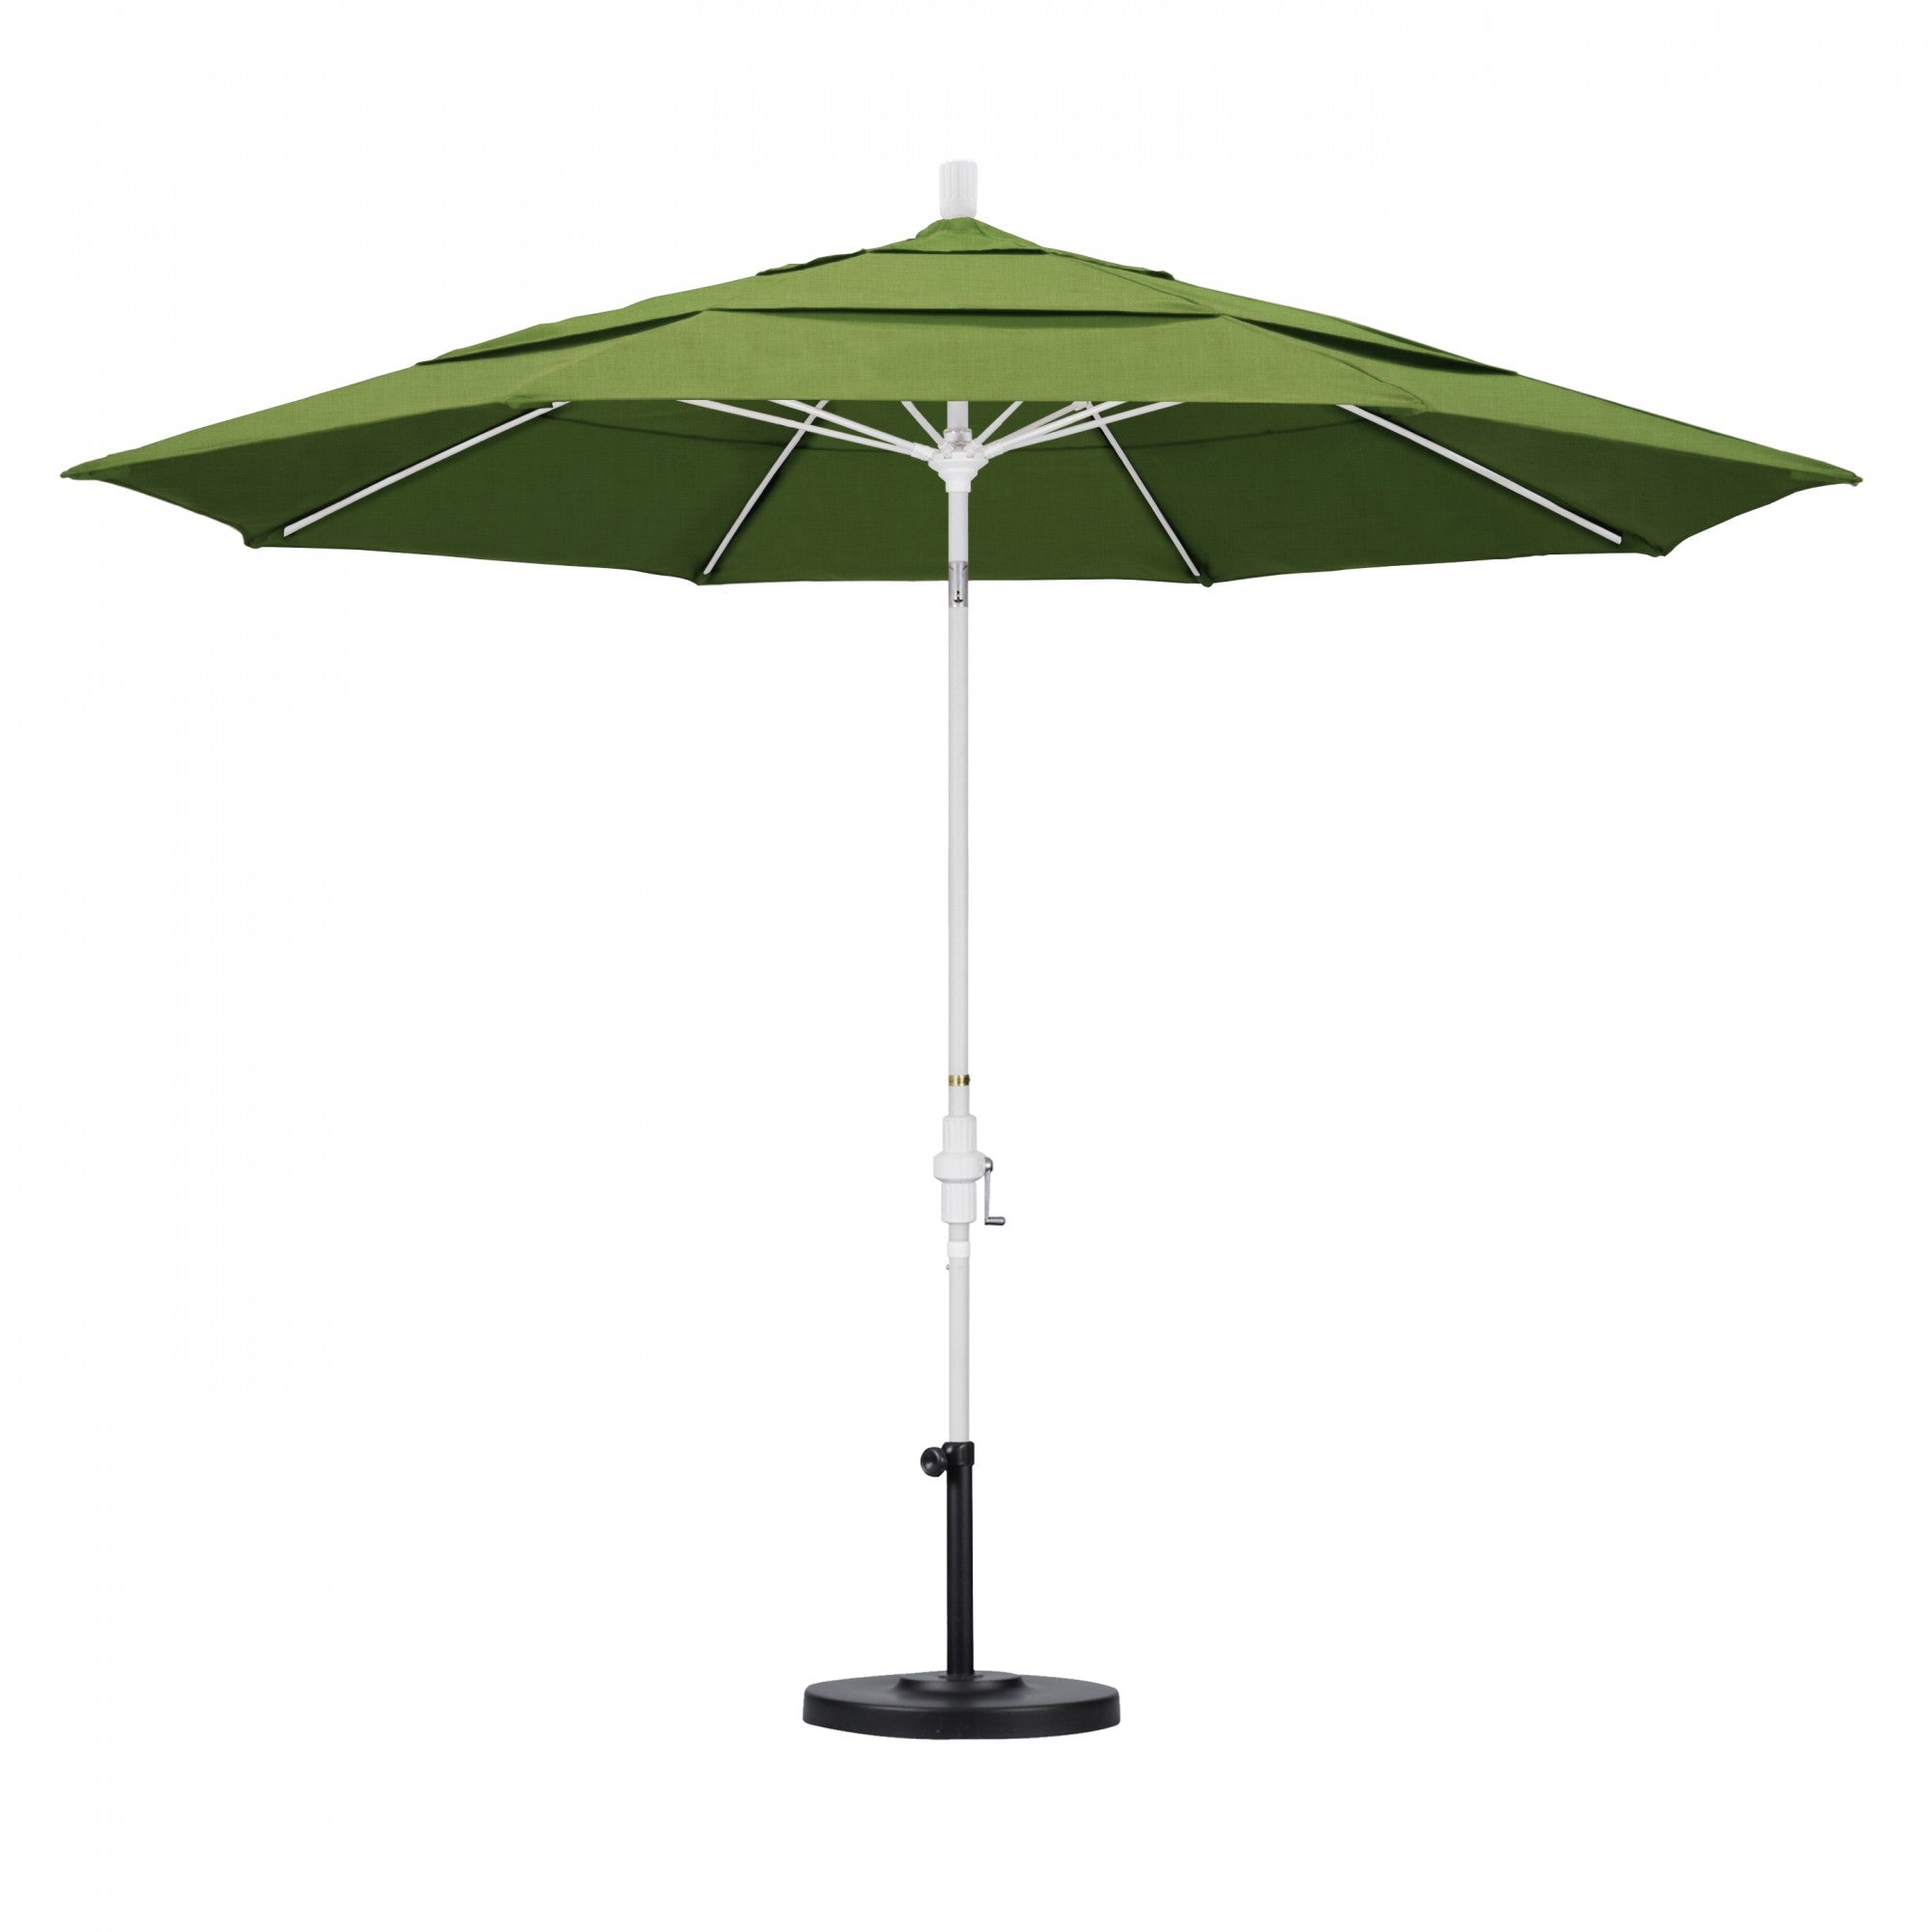 California Umbrella - 11' - Patio Umbrella Umbrella - Aluminum Pole - Spectrum Cilantro - Sunbrella  - GSCUF118170-48022-DWV